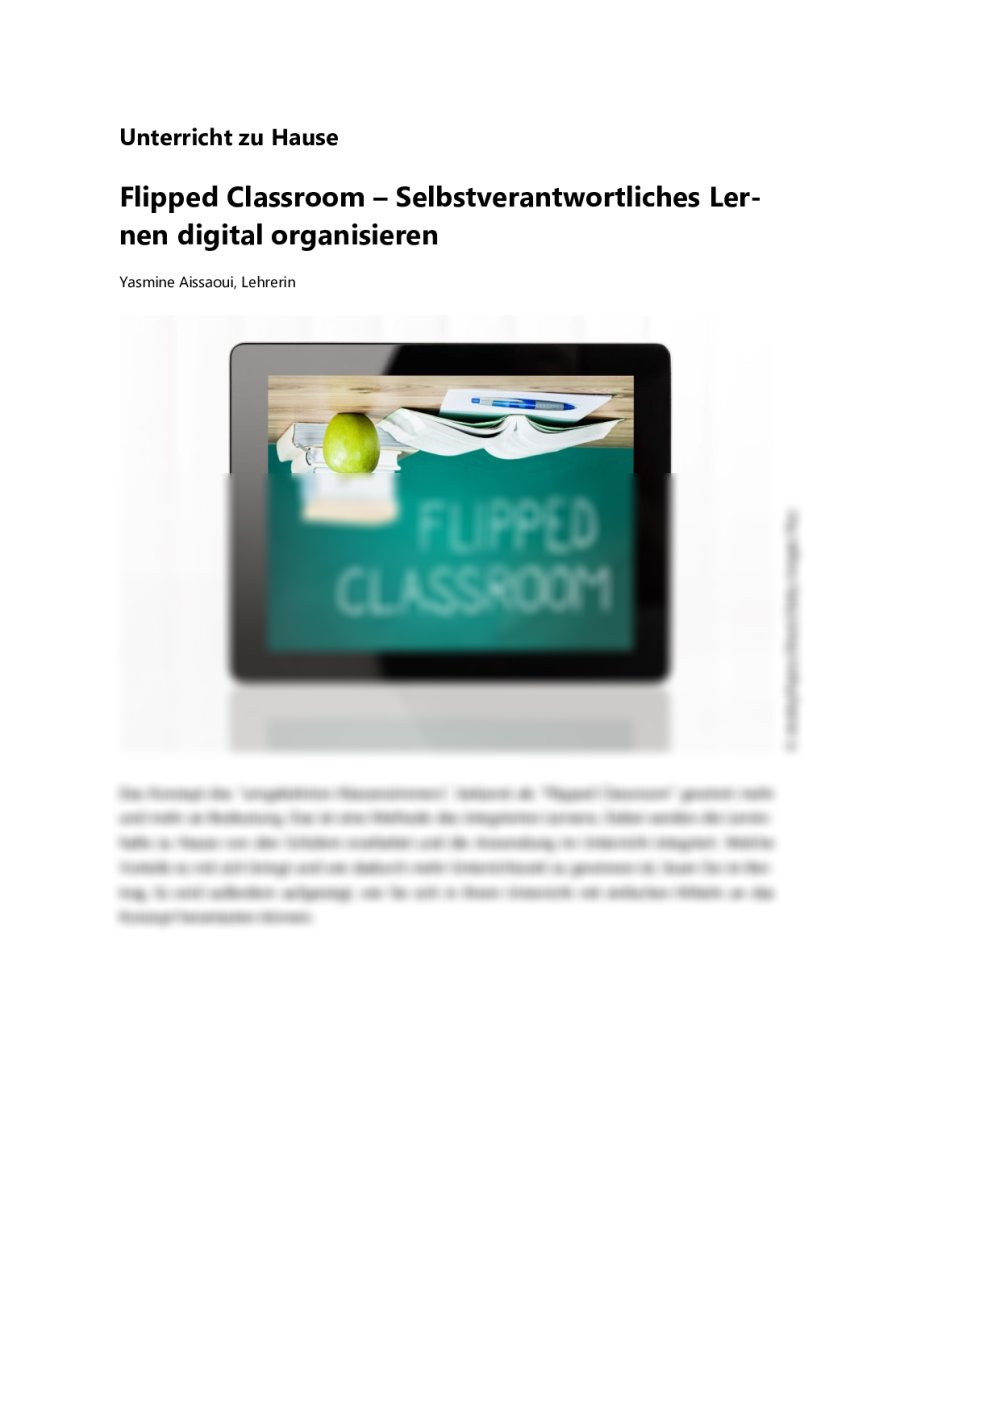 Mit Flipped Classroom selbstorganisiertes Lernen möglich machen - Seite 1